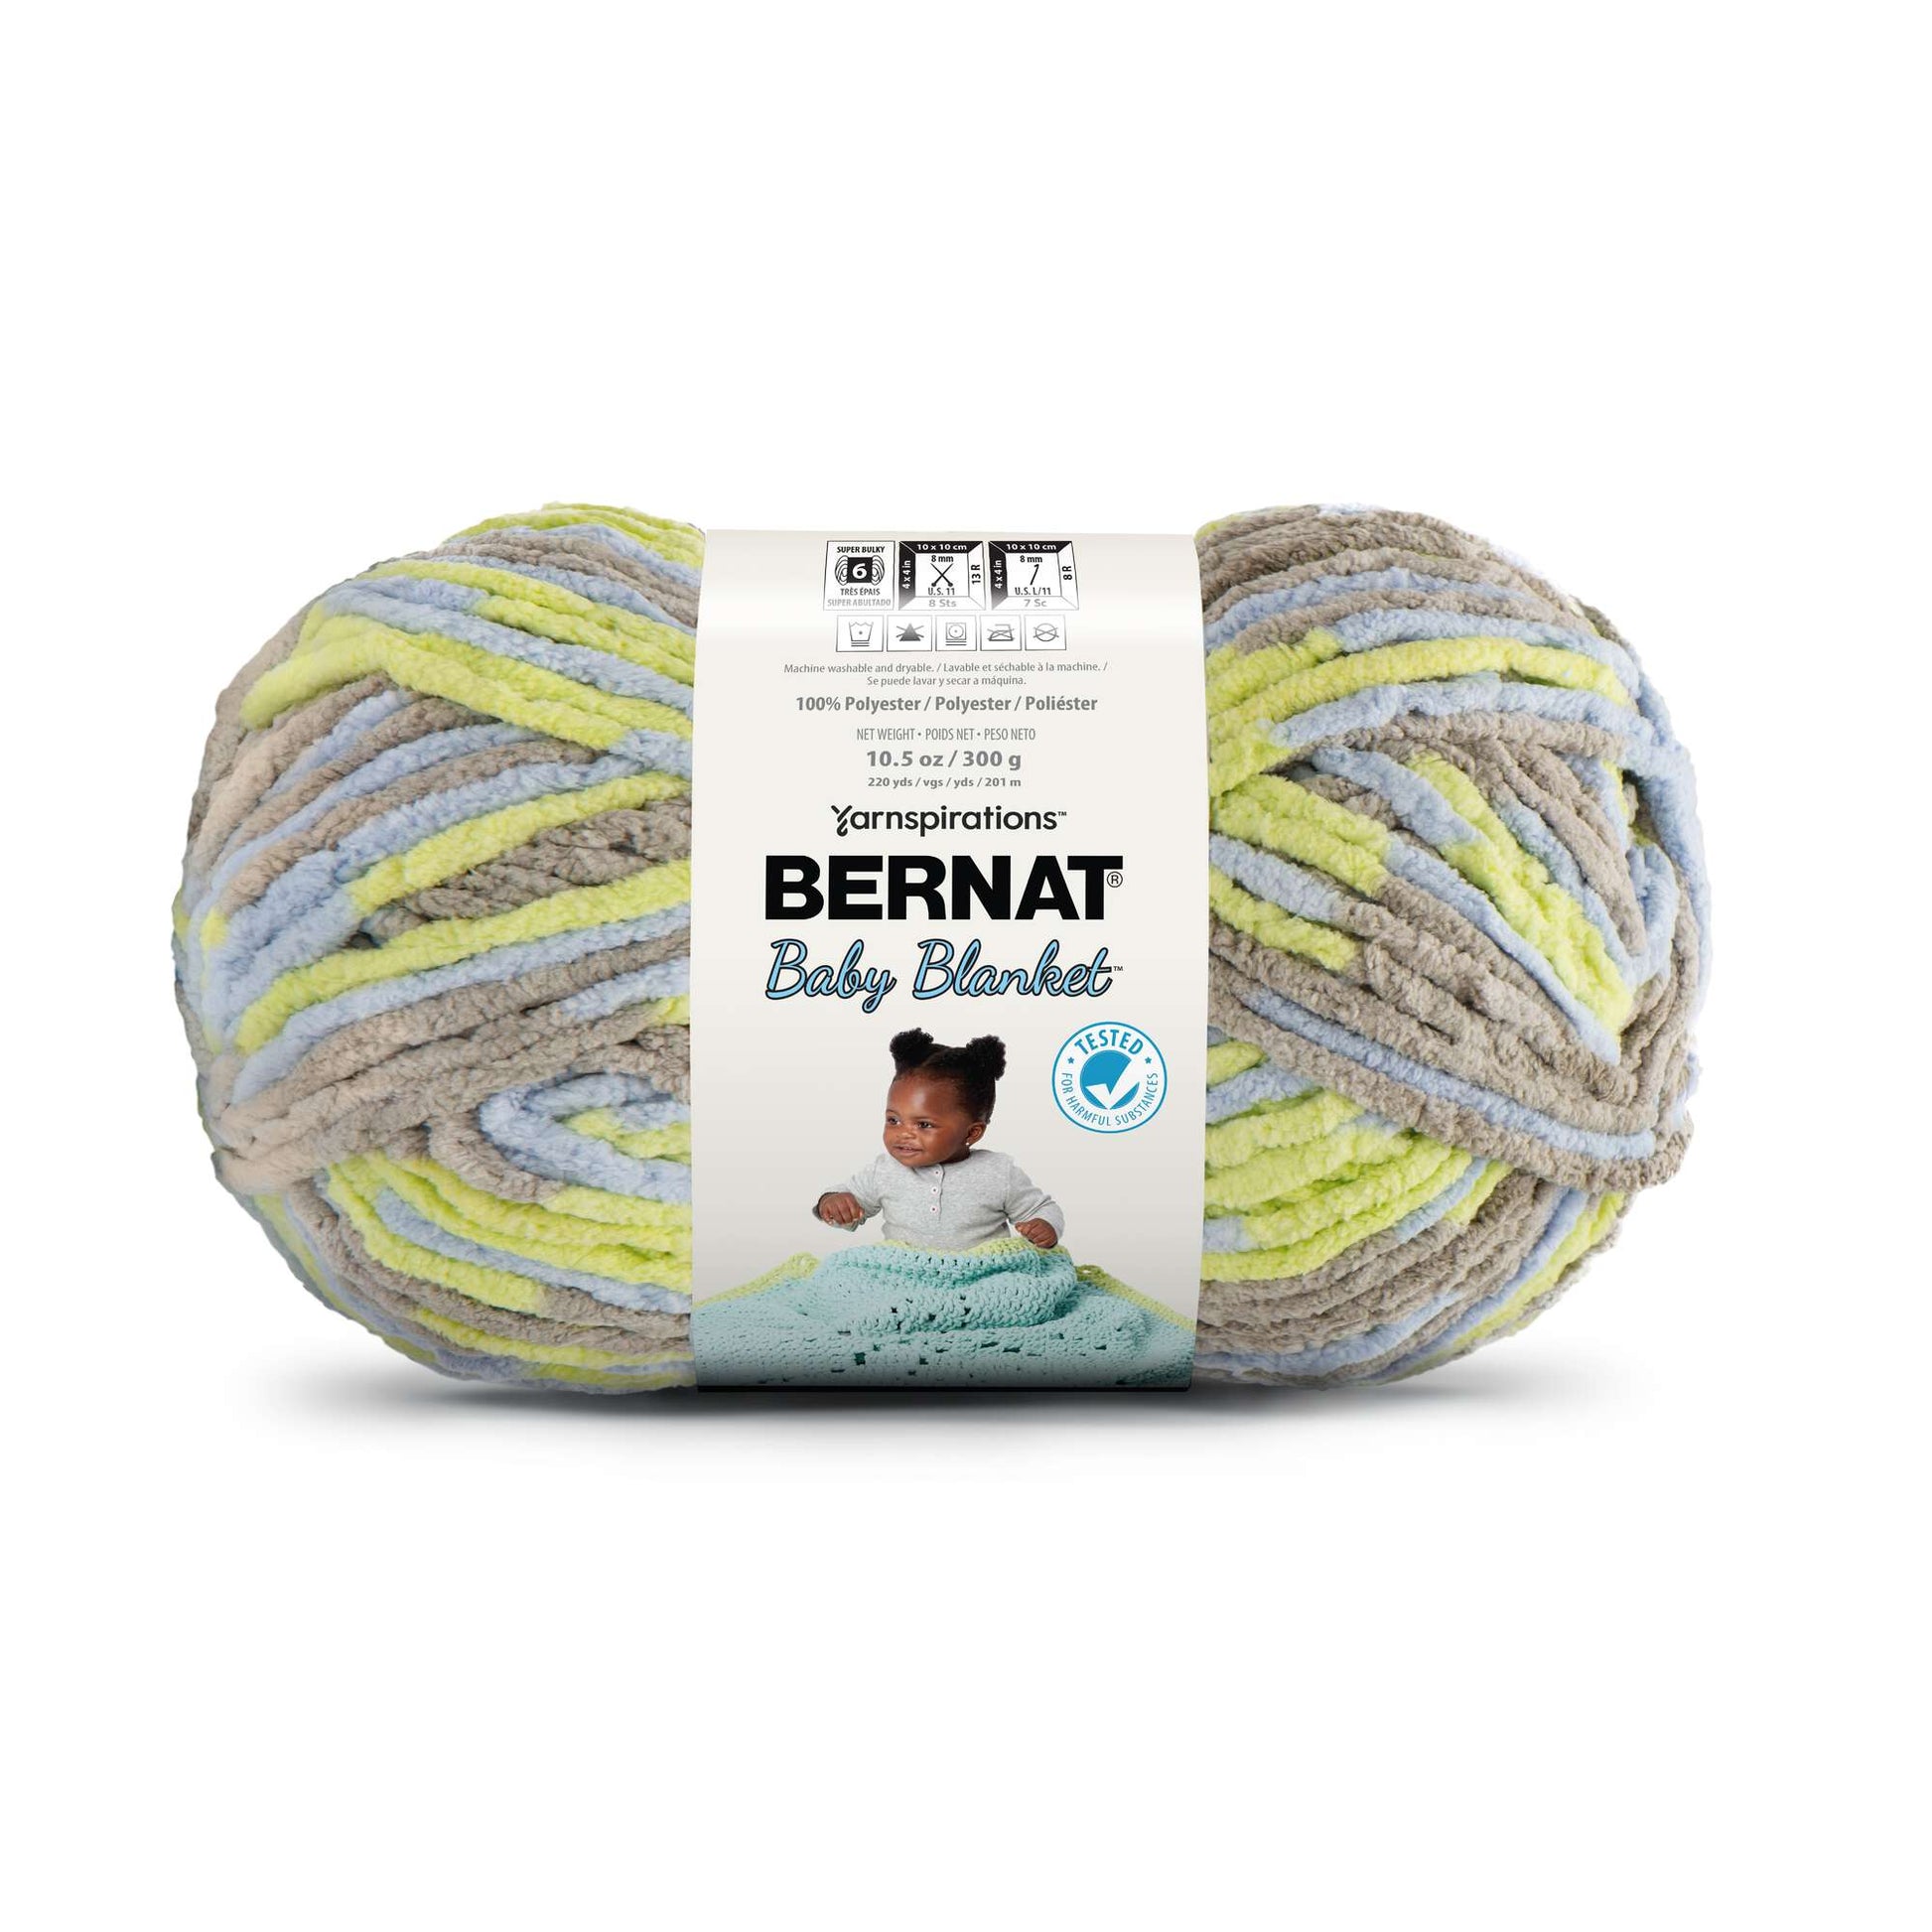 Bernat Baby Blanket Yarn (300g/10.5oz) Little Boy Dove